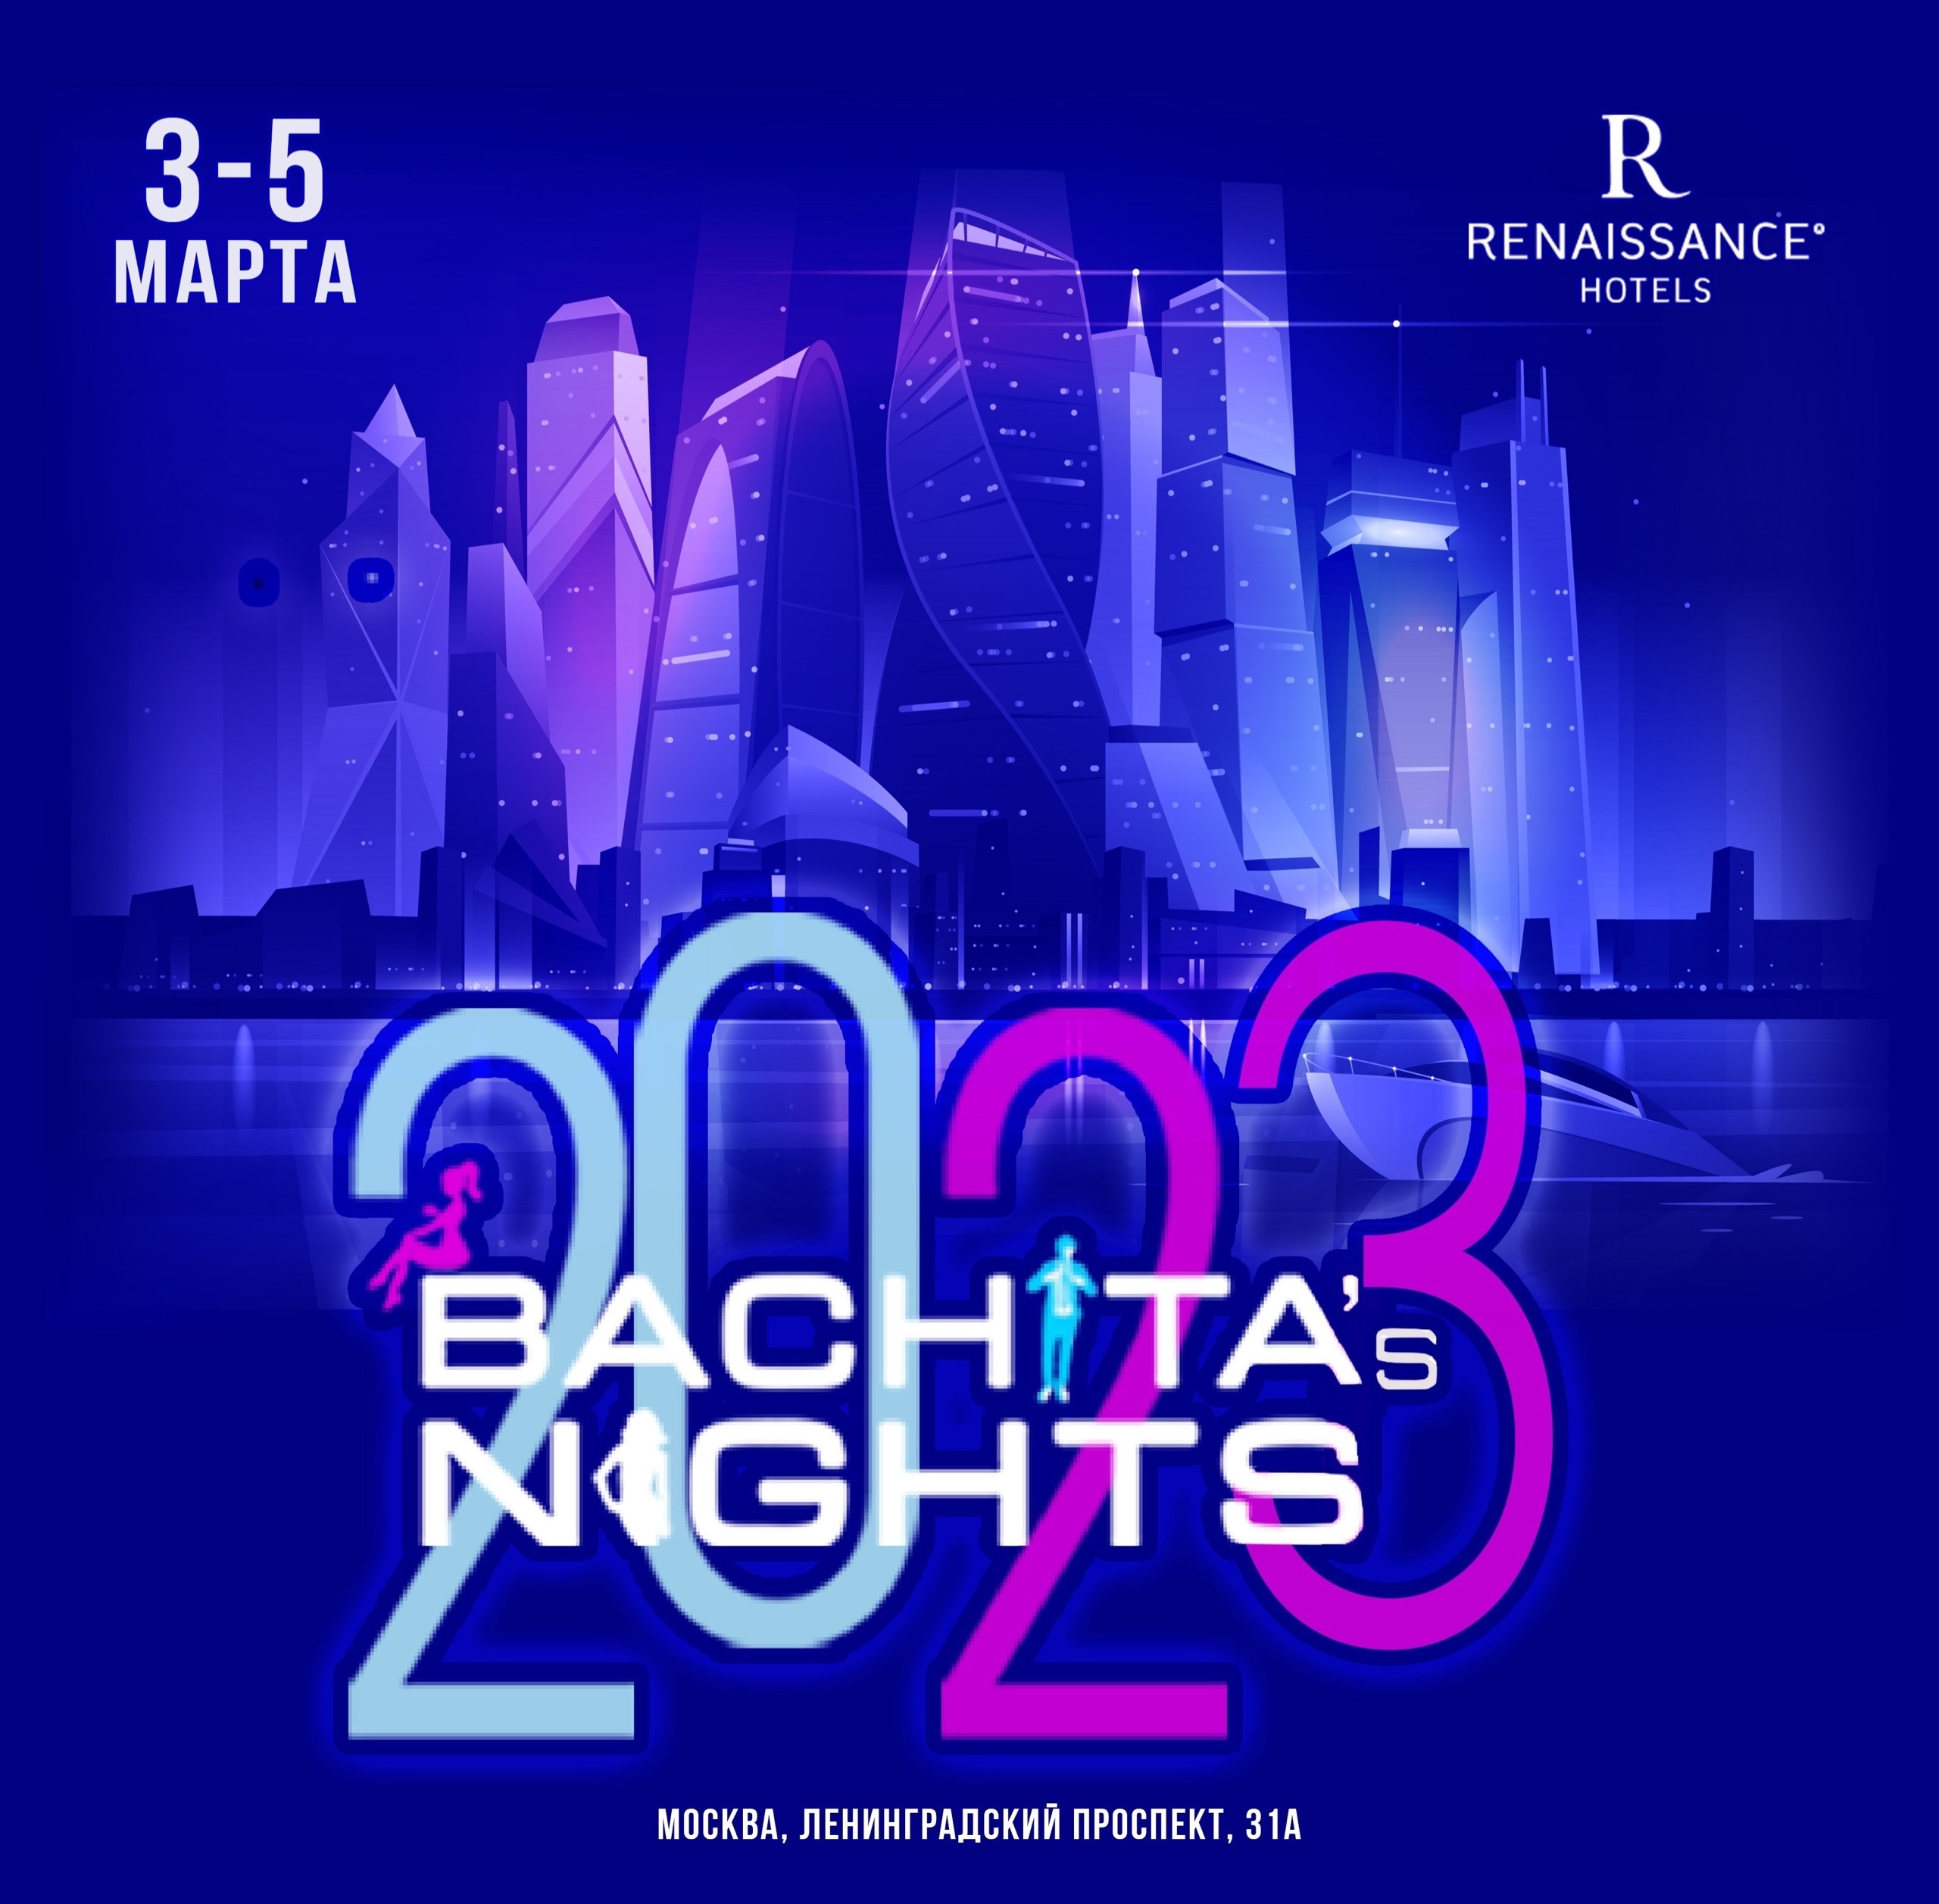 BACHATA'S NIGHTS фестиваль бачаты, проводиться в марте 2023 в городе Москва